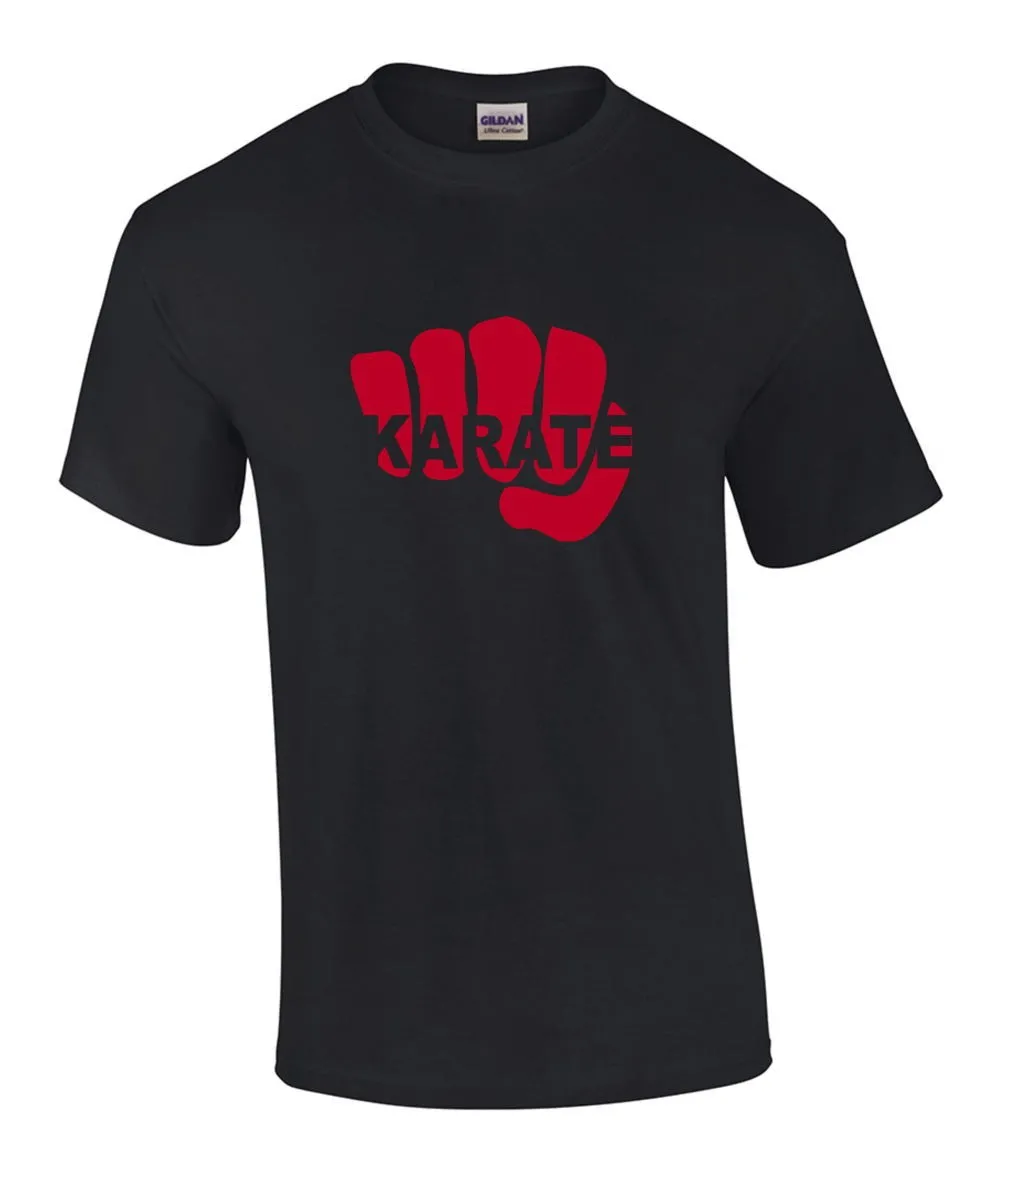 T-shirt Karate